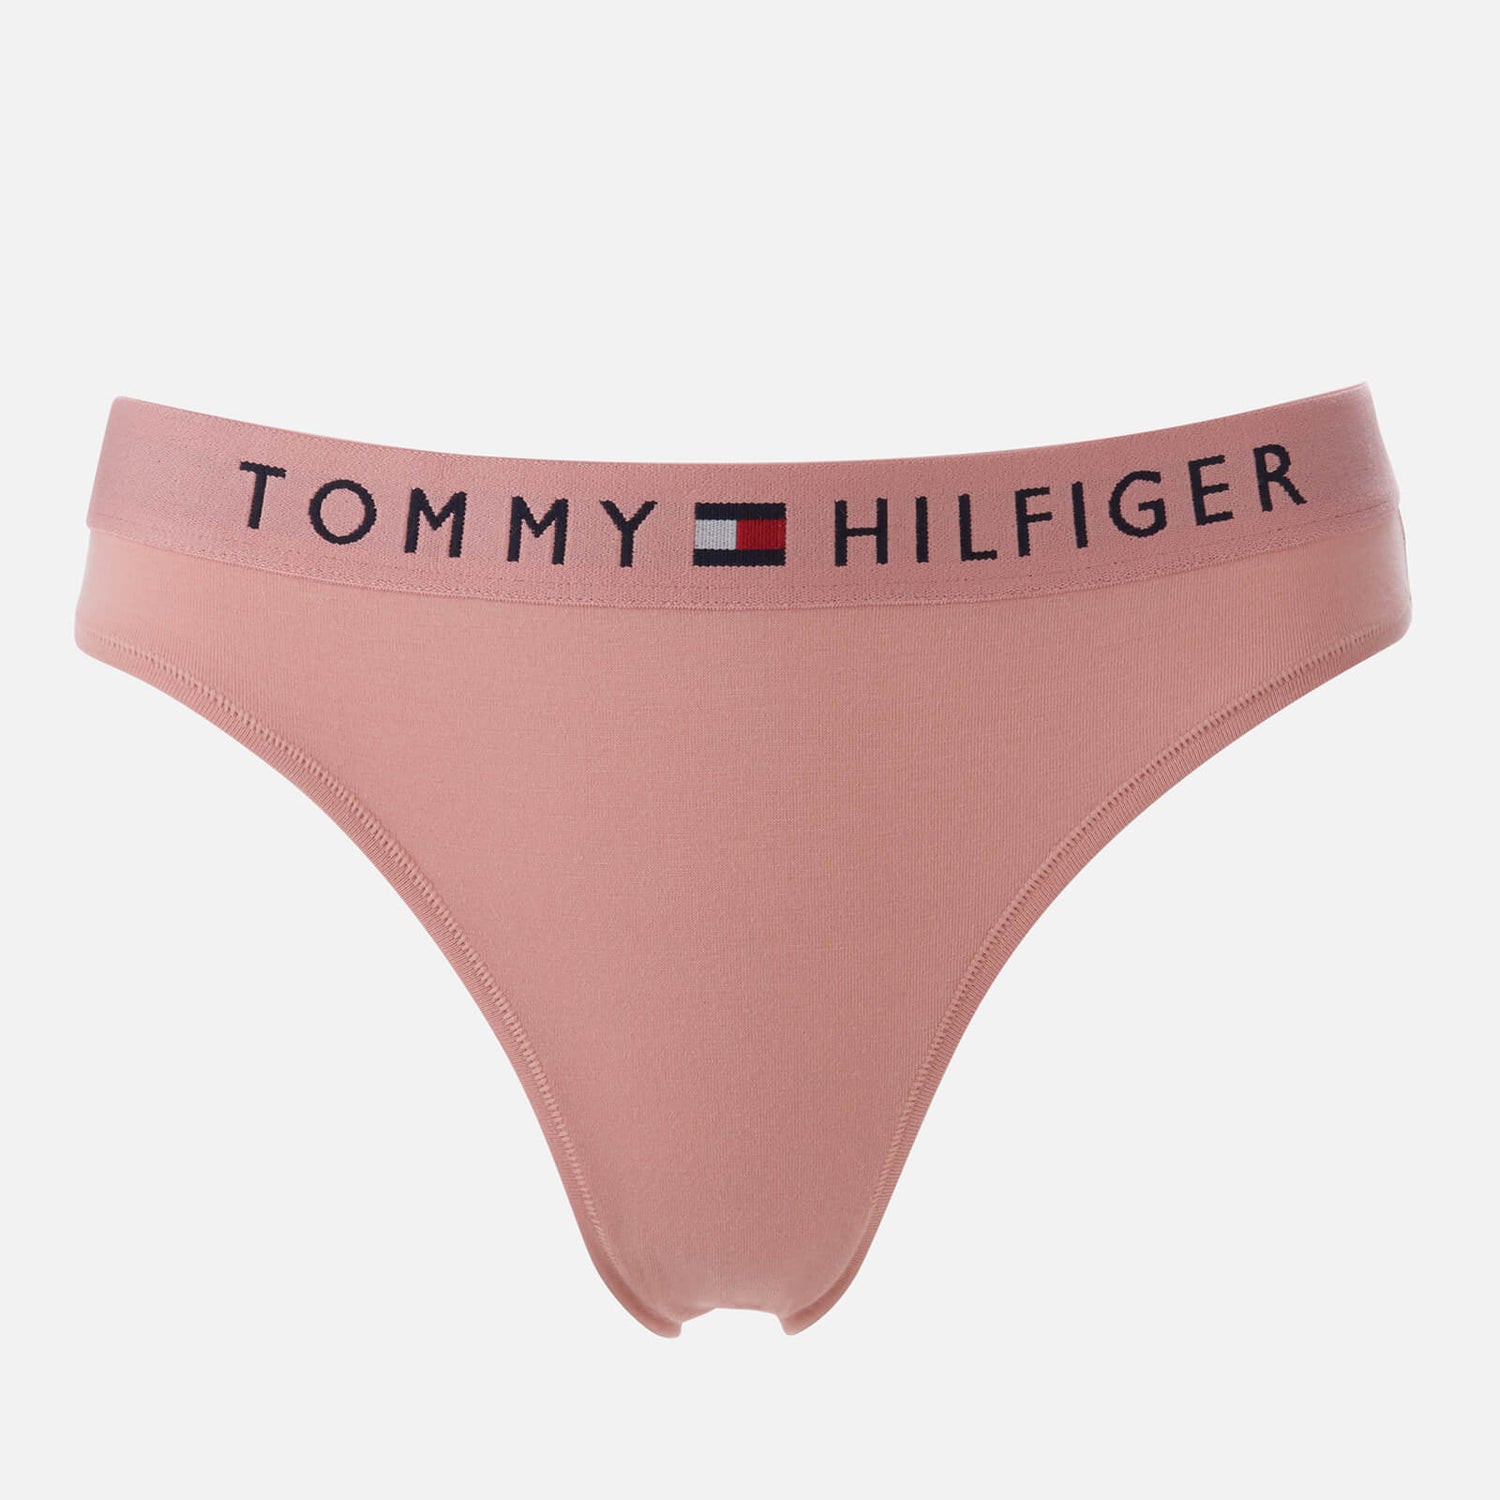 Tommy Hilfiger Women's Bikini Briefs - Rose Tan